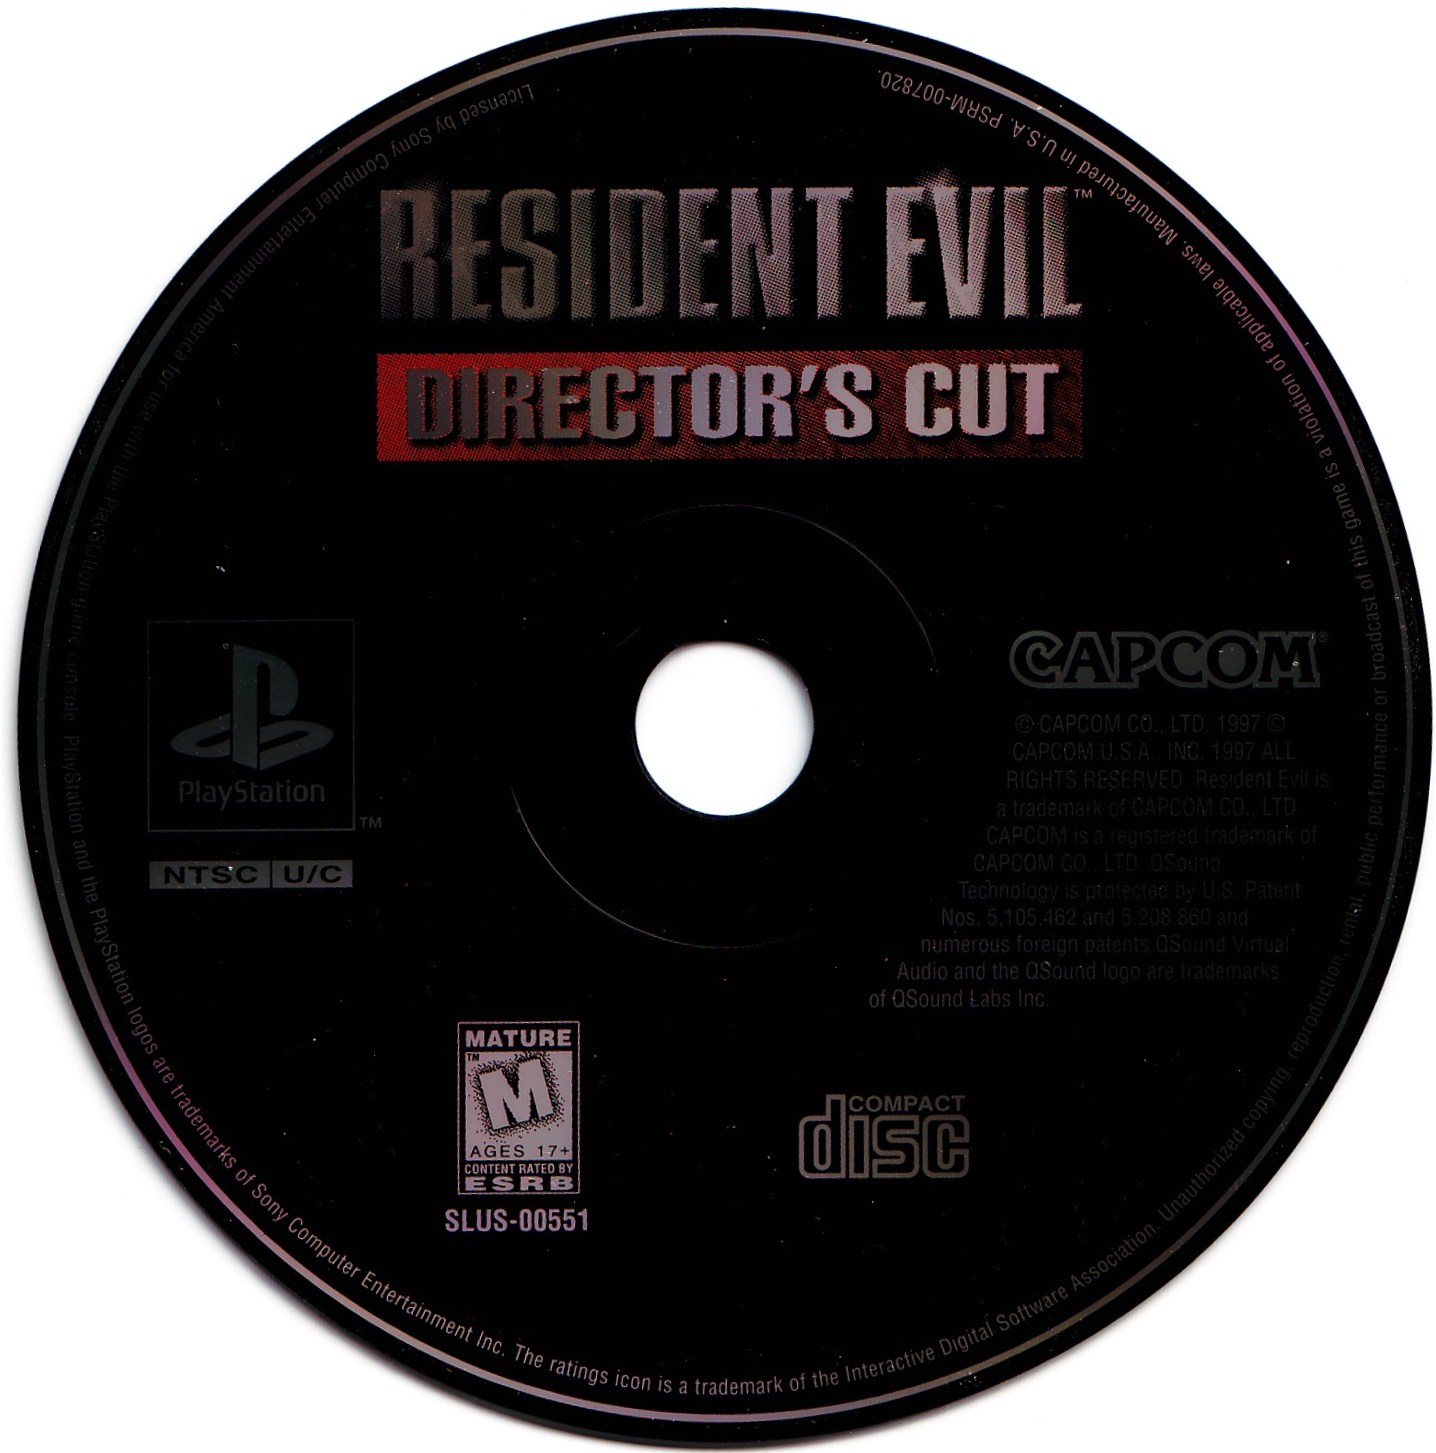 Resident Evil PSX cover